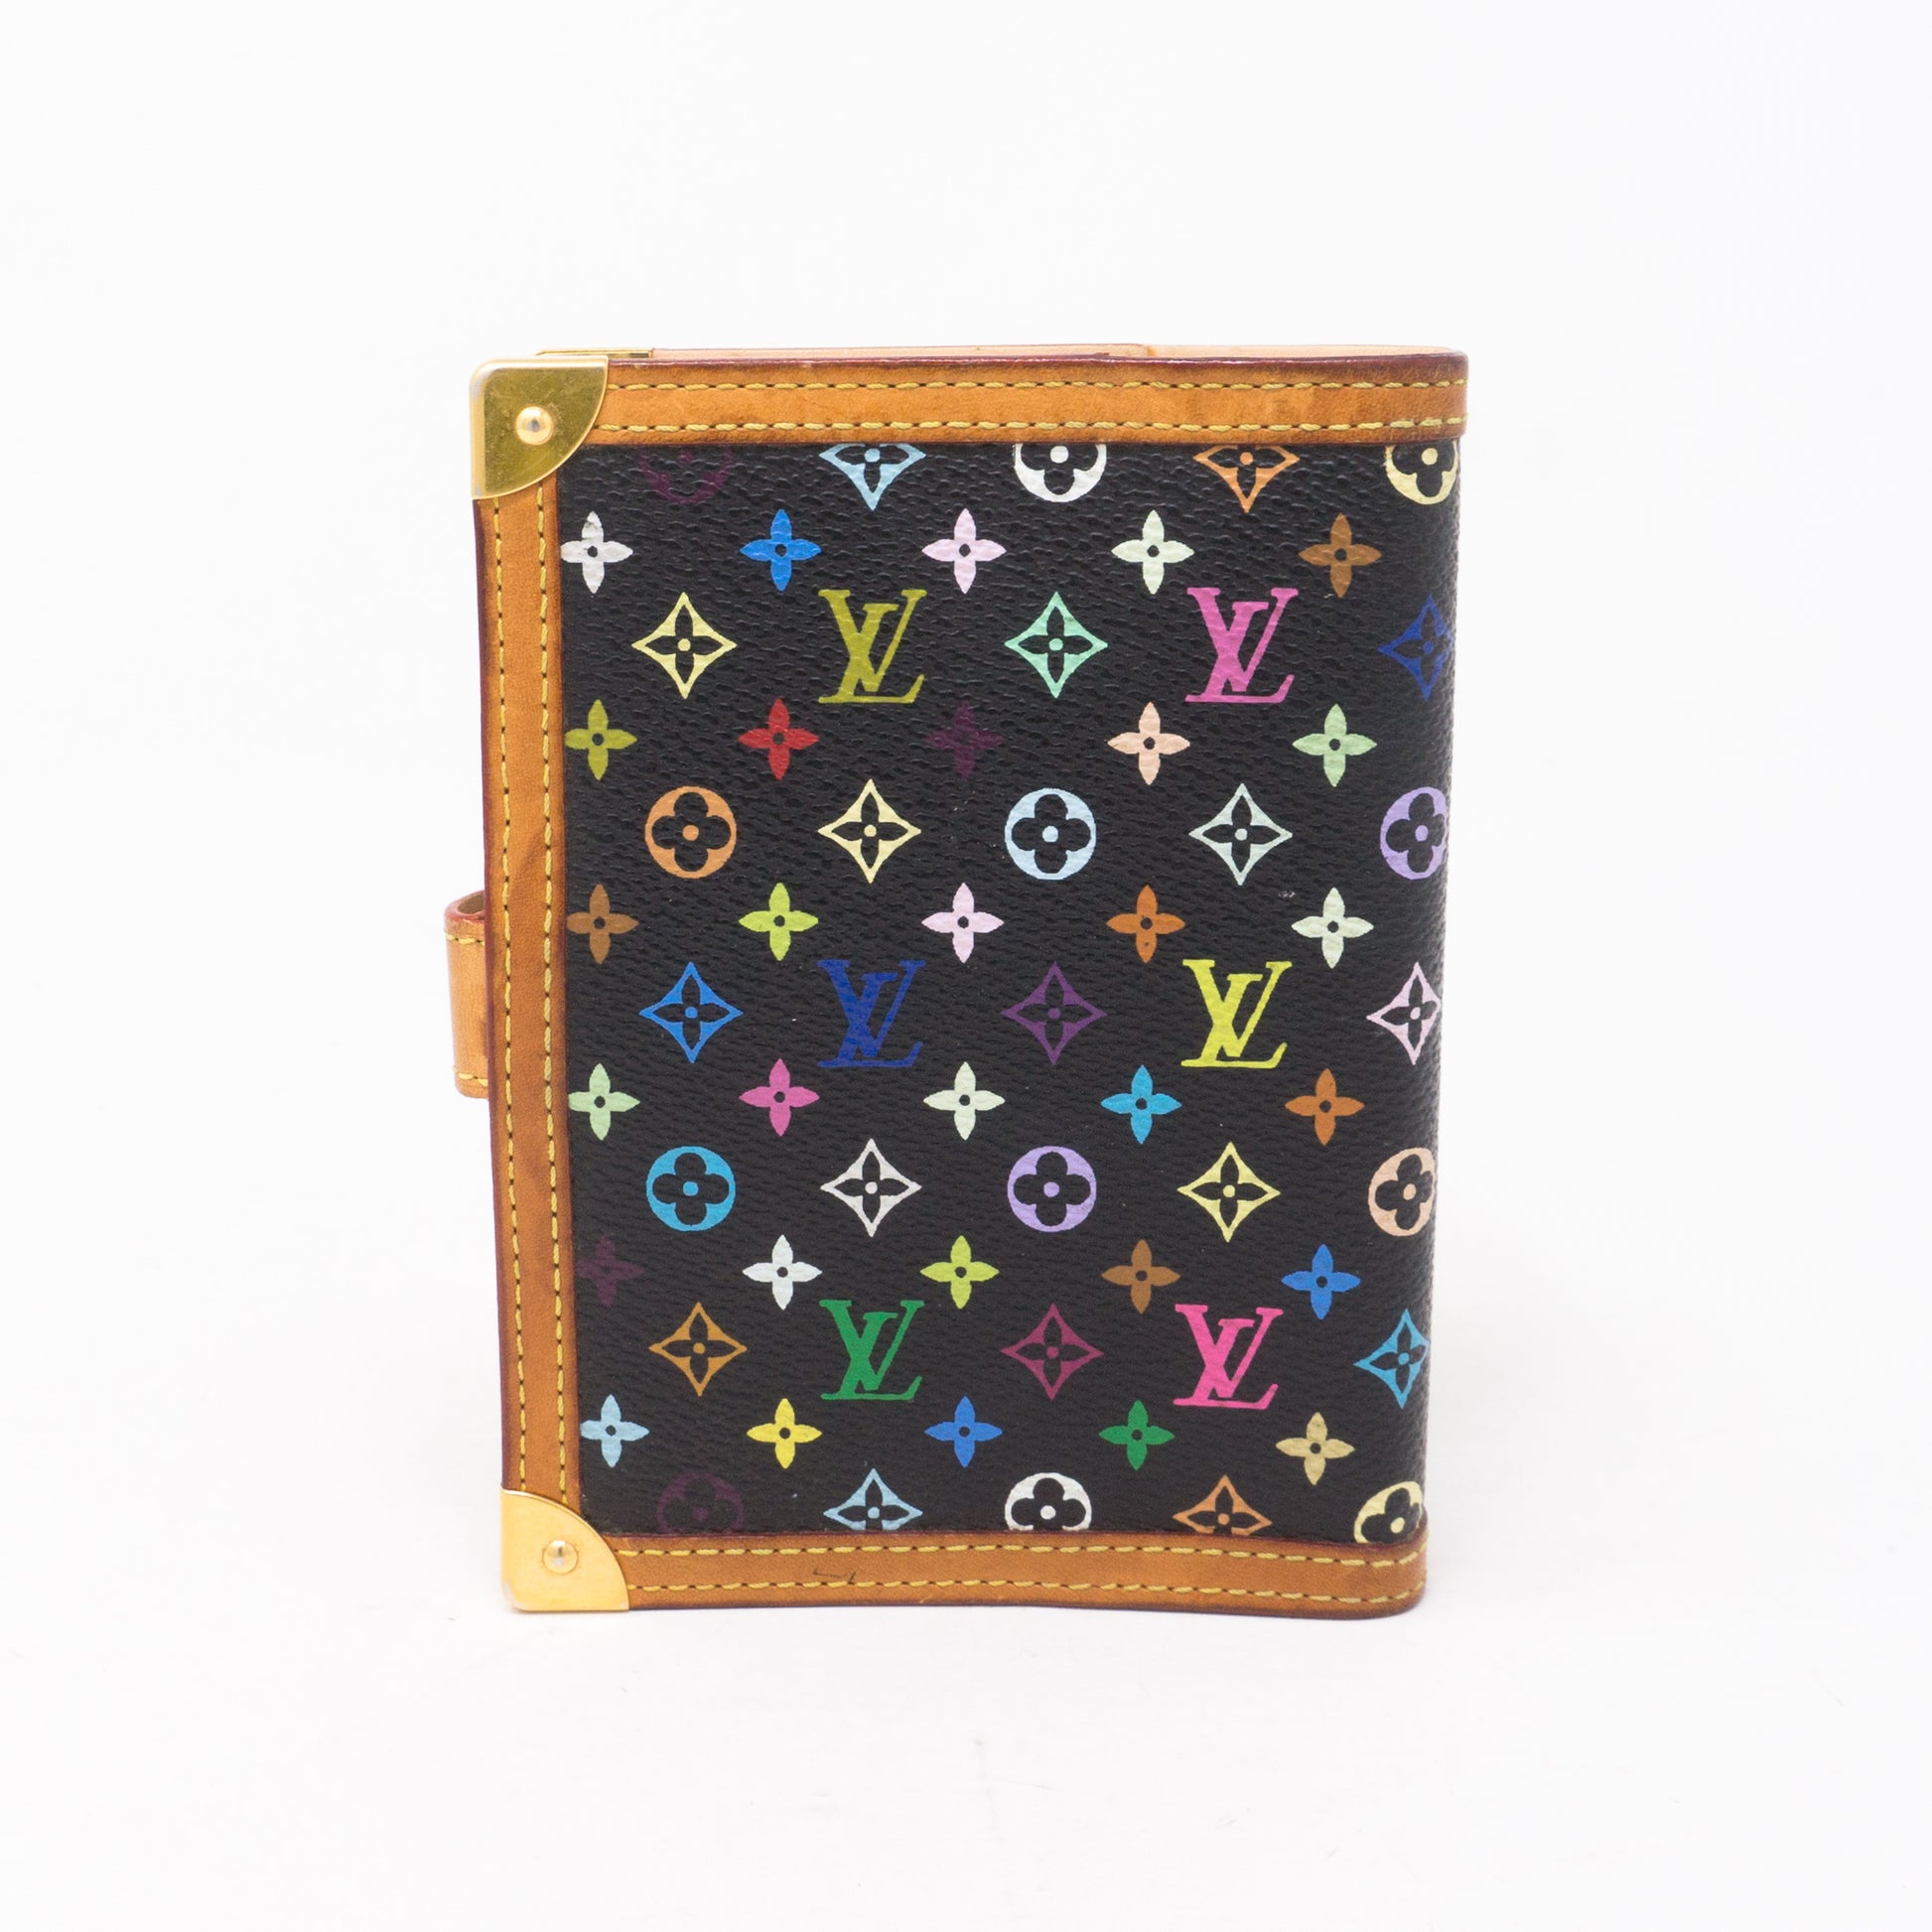 Louis Vuitton Monogram Multicolore Small Ring Agenda Cover - Black